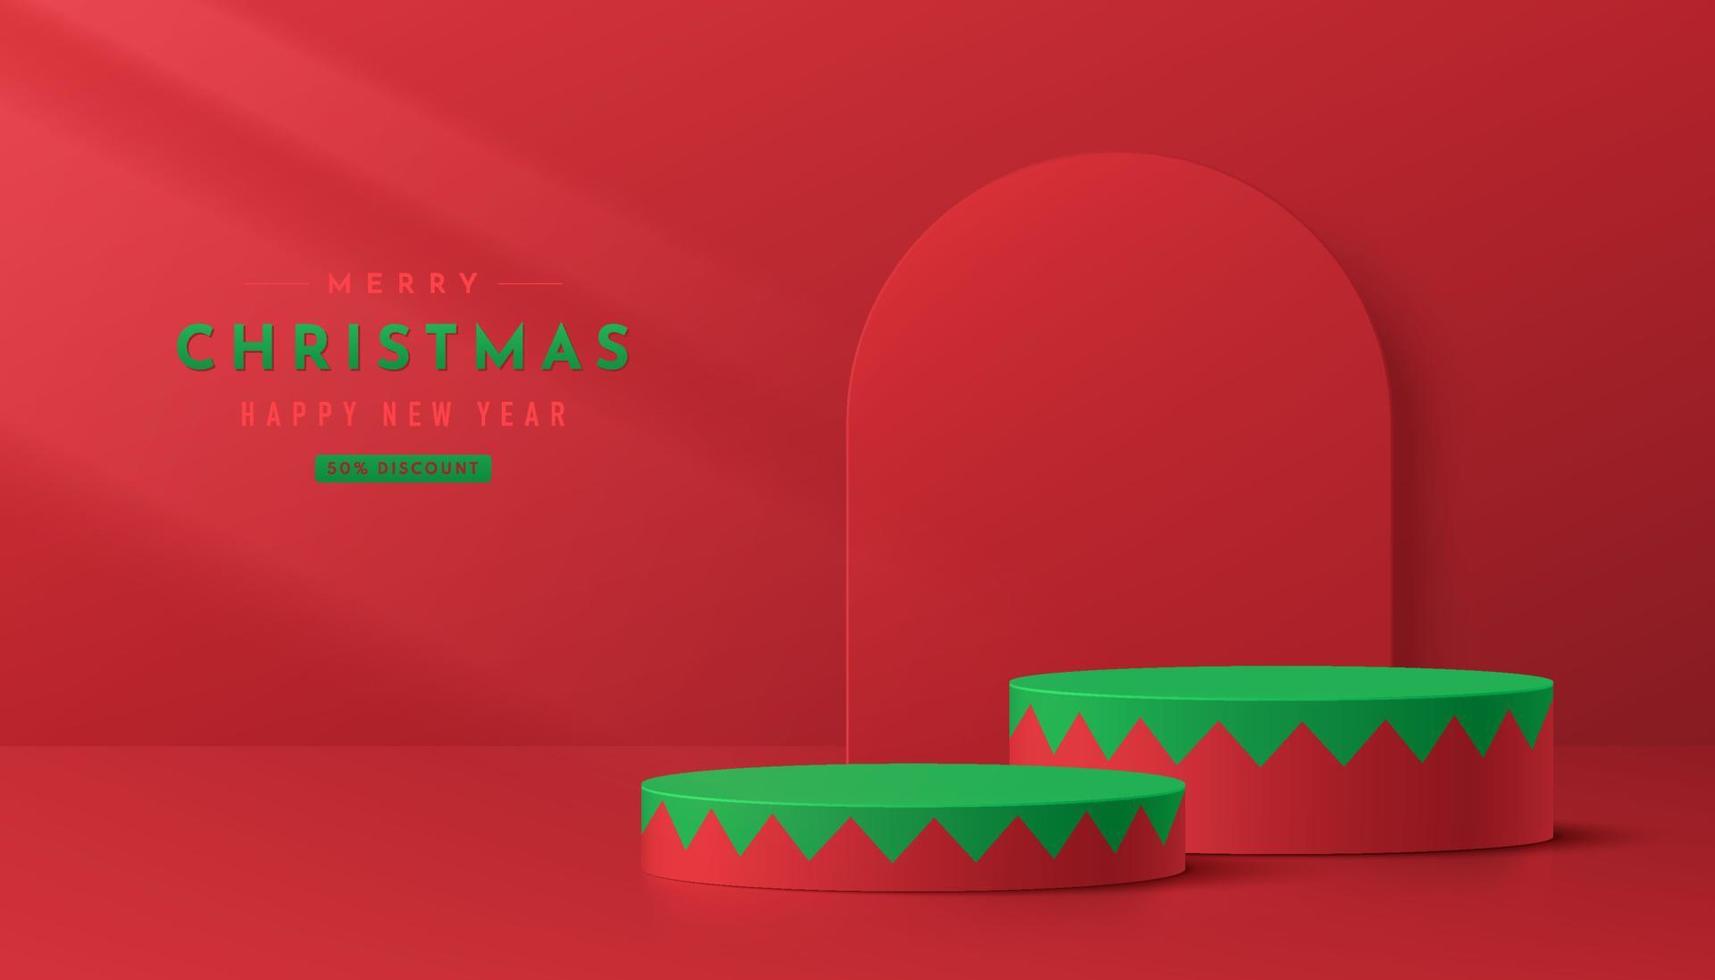 podio de pedestal de cilindro 3d rojo, verde realista en estilo de patrón dentado. concepto de feliz navidad. productos de maqueta de escena mínima abstracta, escaparate de escenario, exhibición de promoción. formas geométricas vectoriales. vector